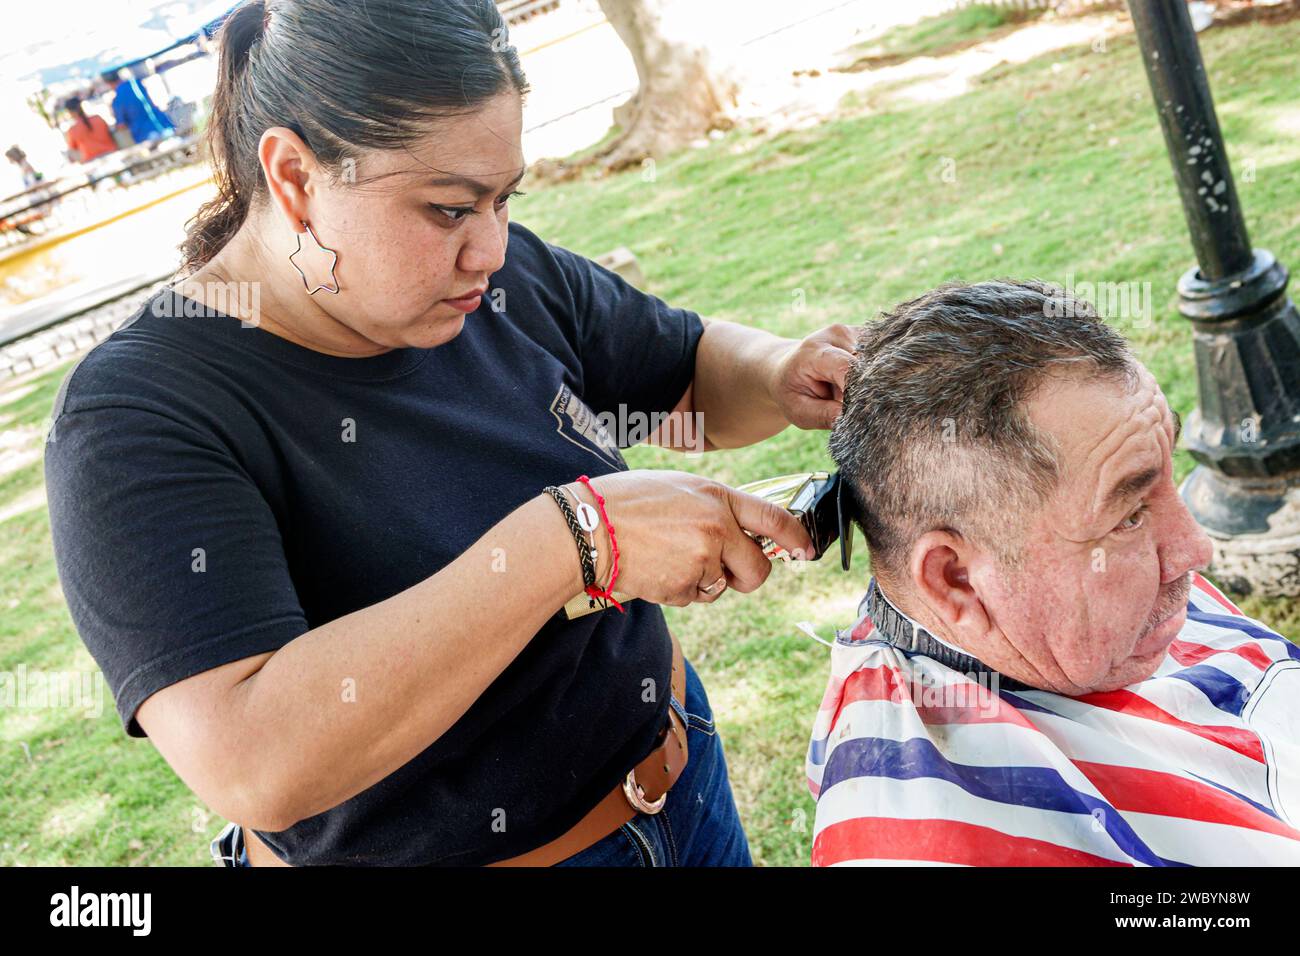 Merida Mexique, centro historico quartier historique central, Parque de San Juan, salon de beauté école de coiffure étudiant offrant des coupes de cheveux gratuites, WO Banque D'Images